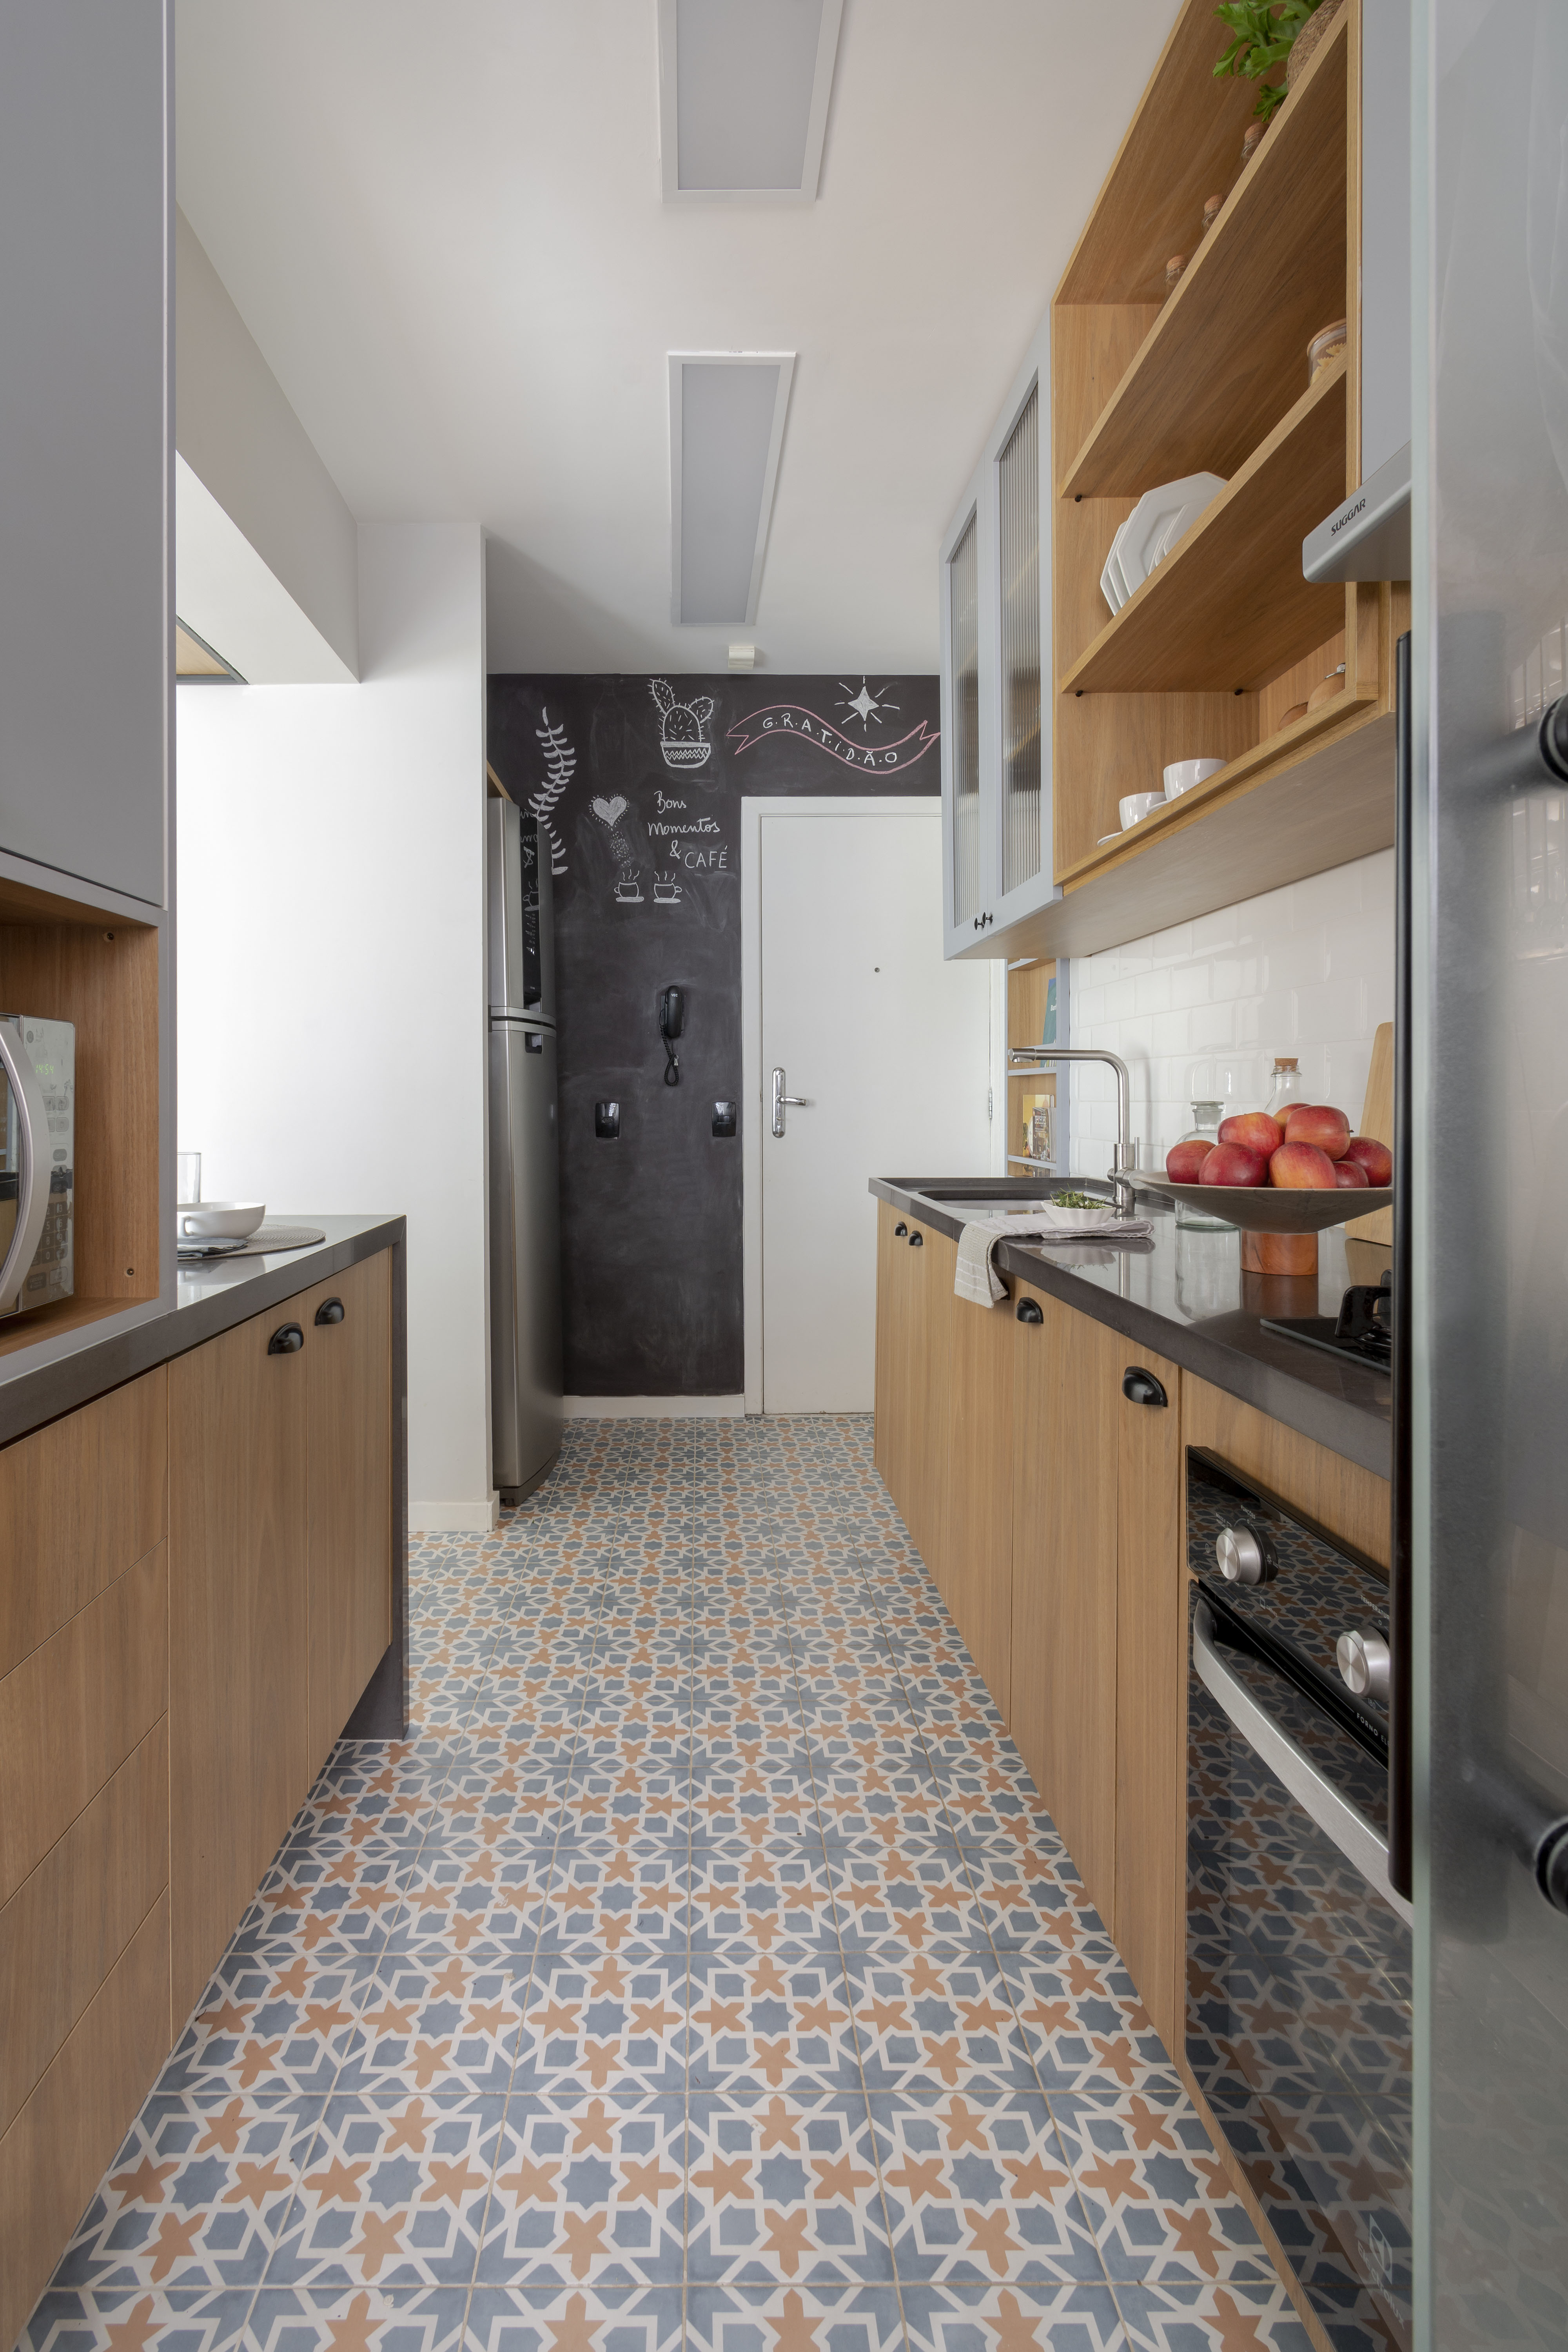 Apê de 95 m² ganha suíte, cozinha integrada e muito charme após reforma